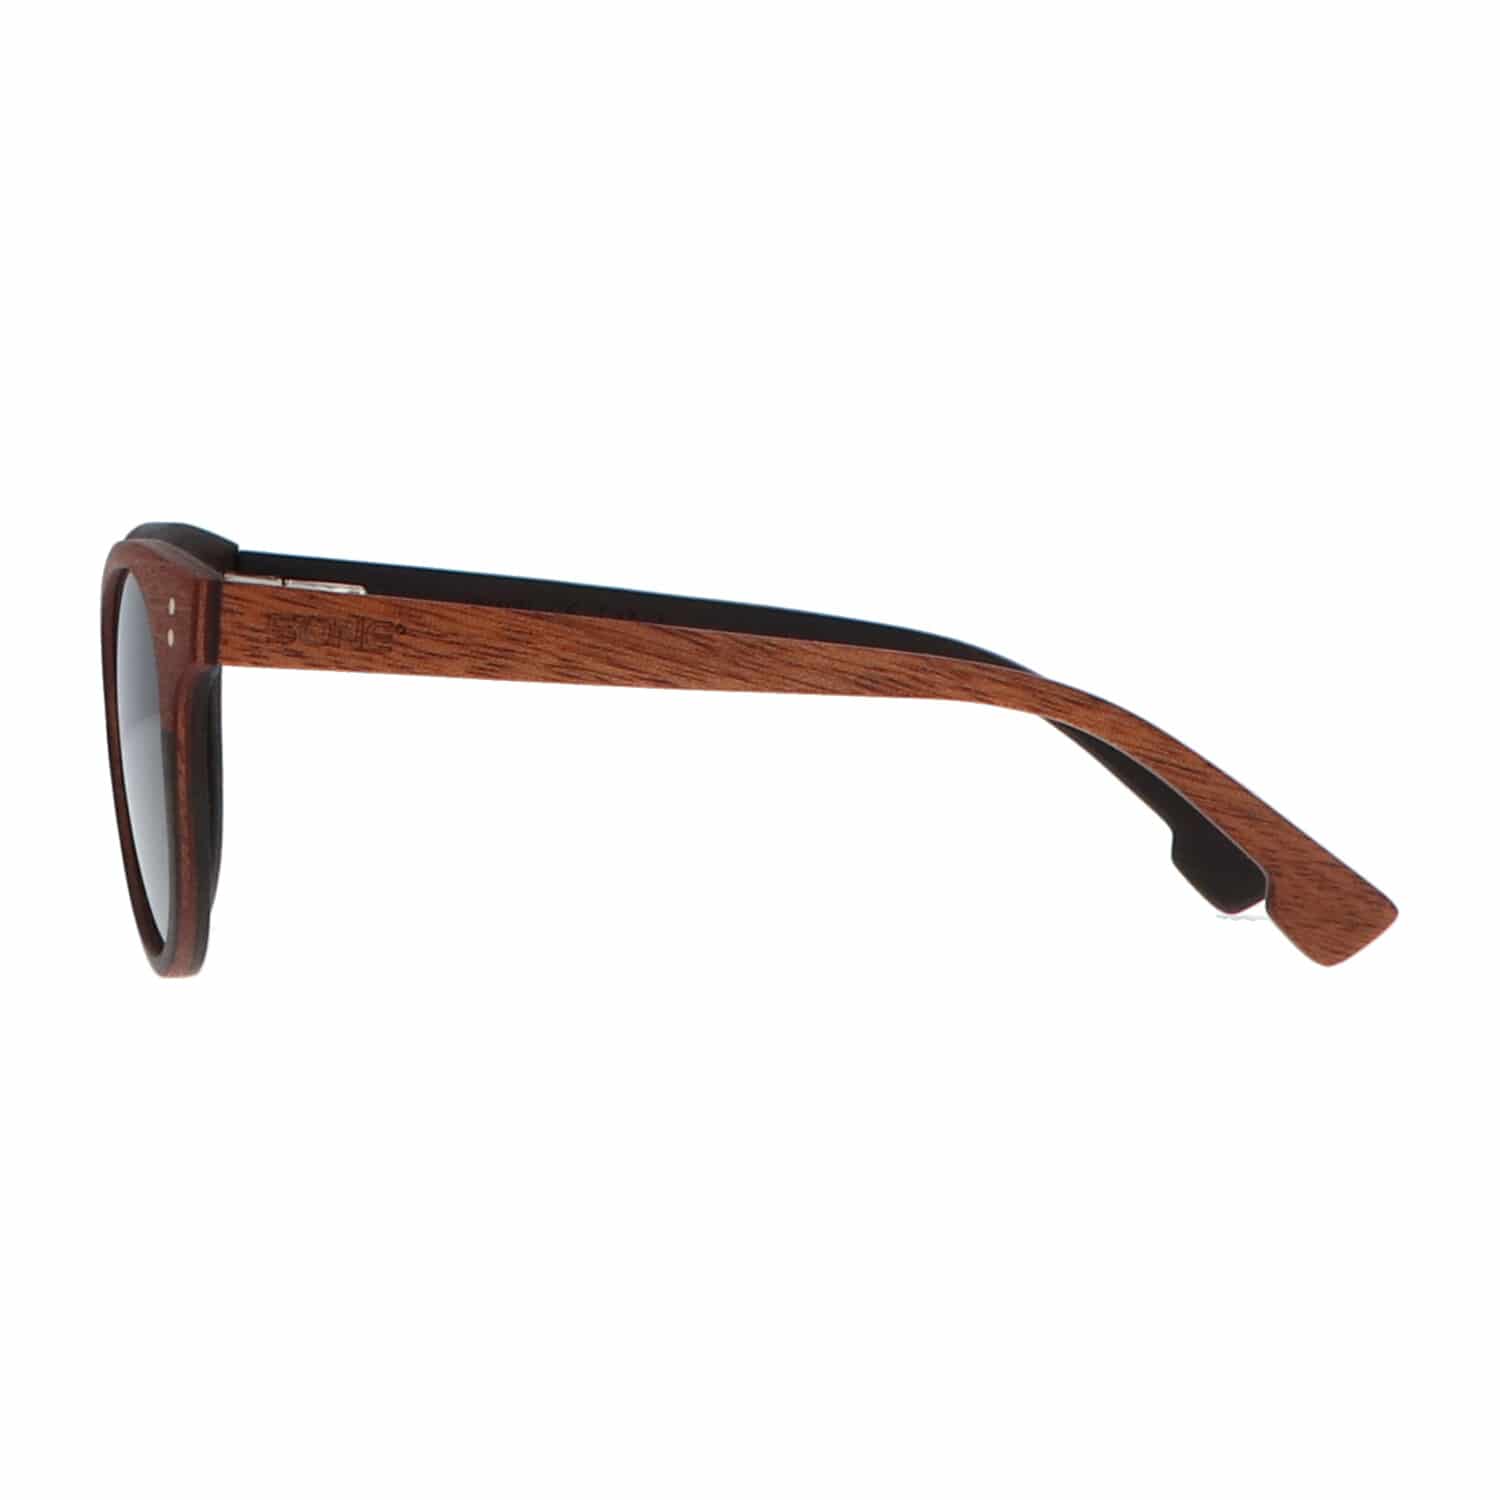 5one® Florence - Sapele hout zonnebril rond model met grijze lens